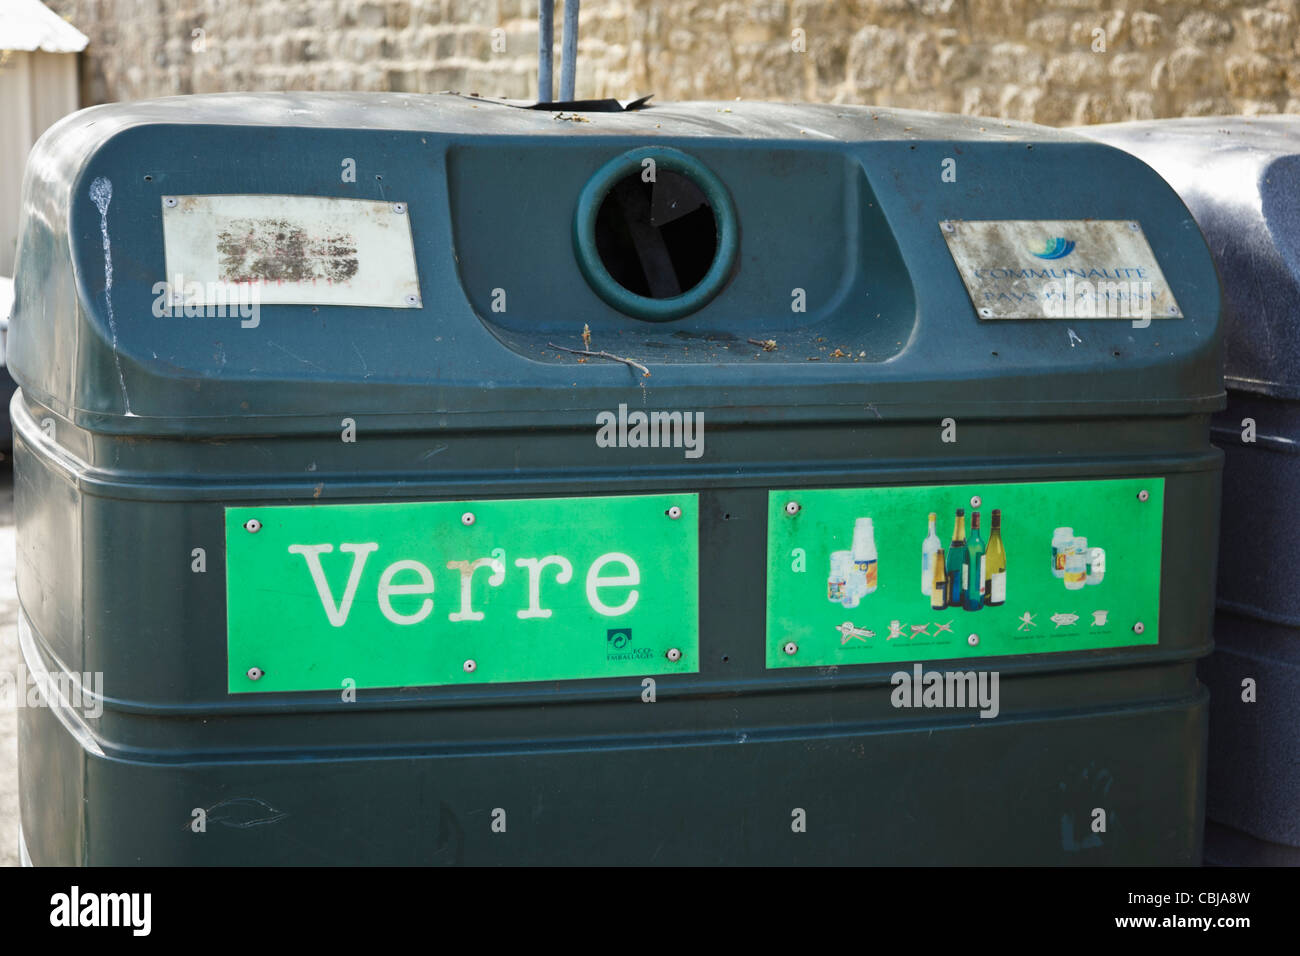 Bac de recyclage pour le verre, France Banque D'Images